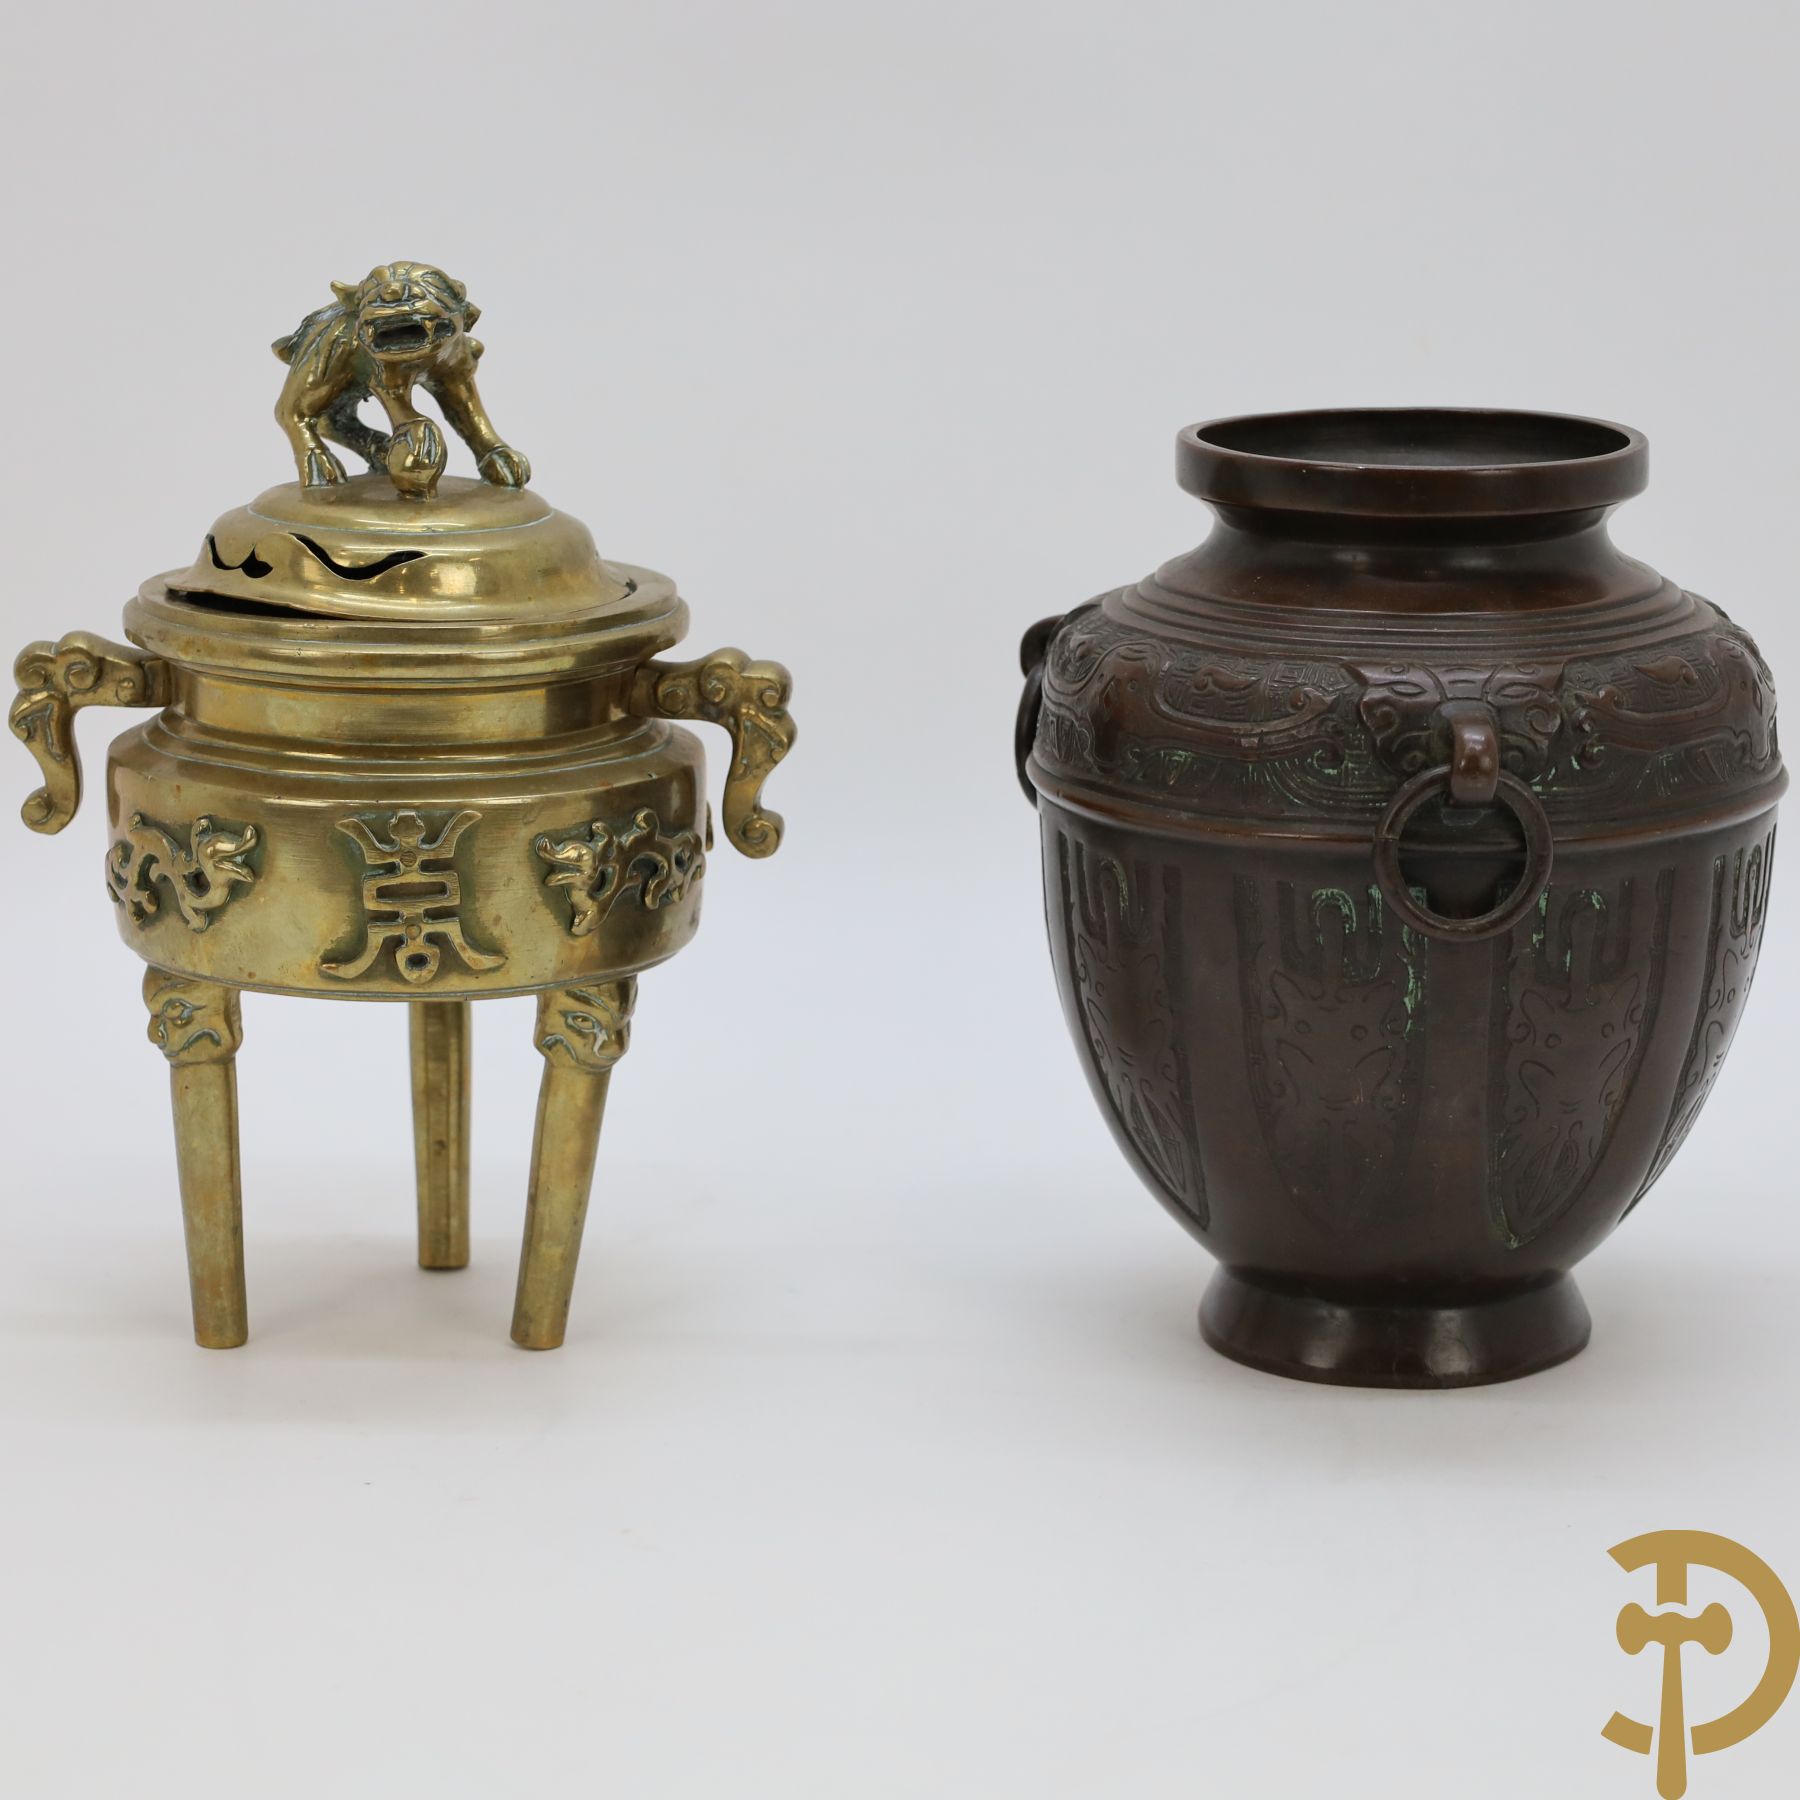 Bronzen Aziatische brule parfum met fo hond en Chinese tekens bezet + Bronzen vaas met 3 ringen en versierd met ranken